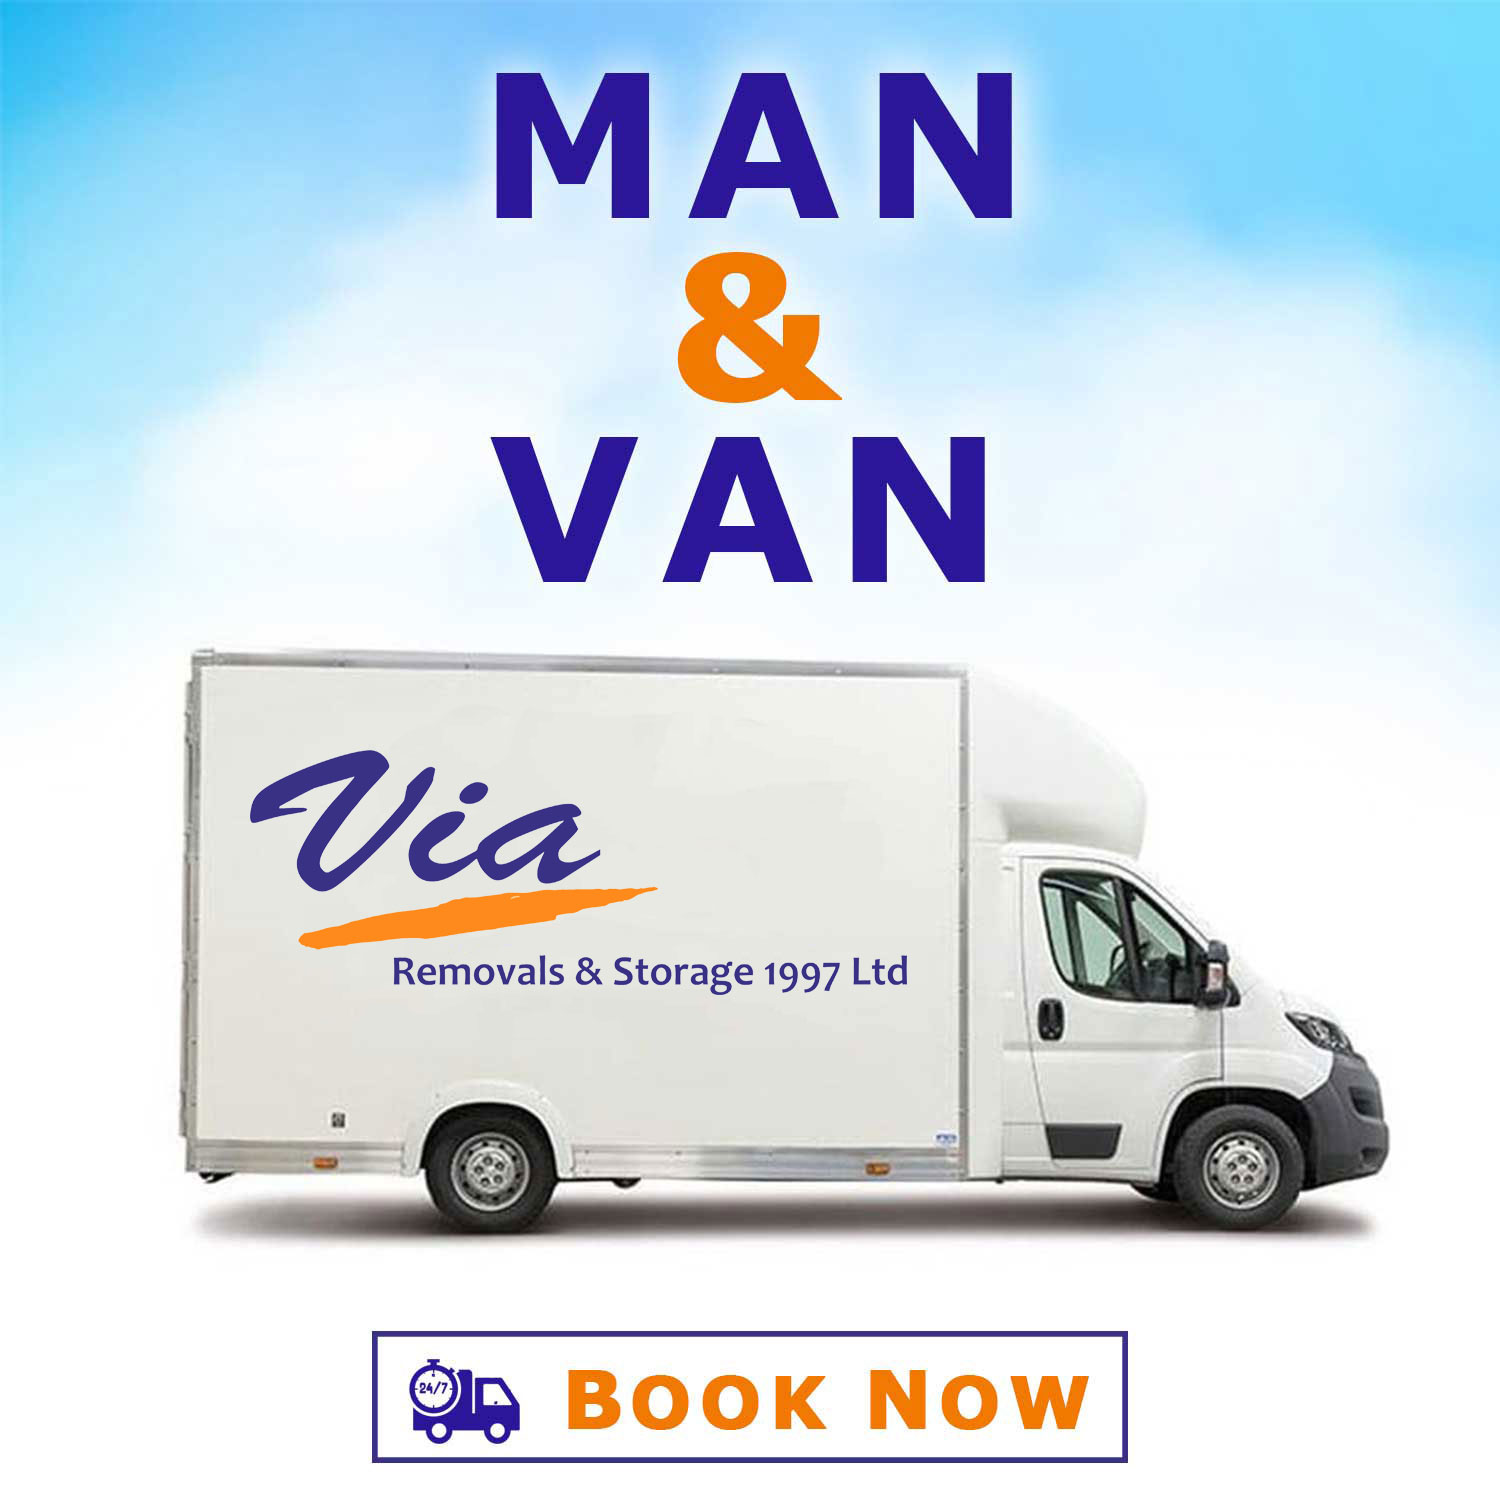 Man and van book now